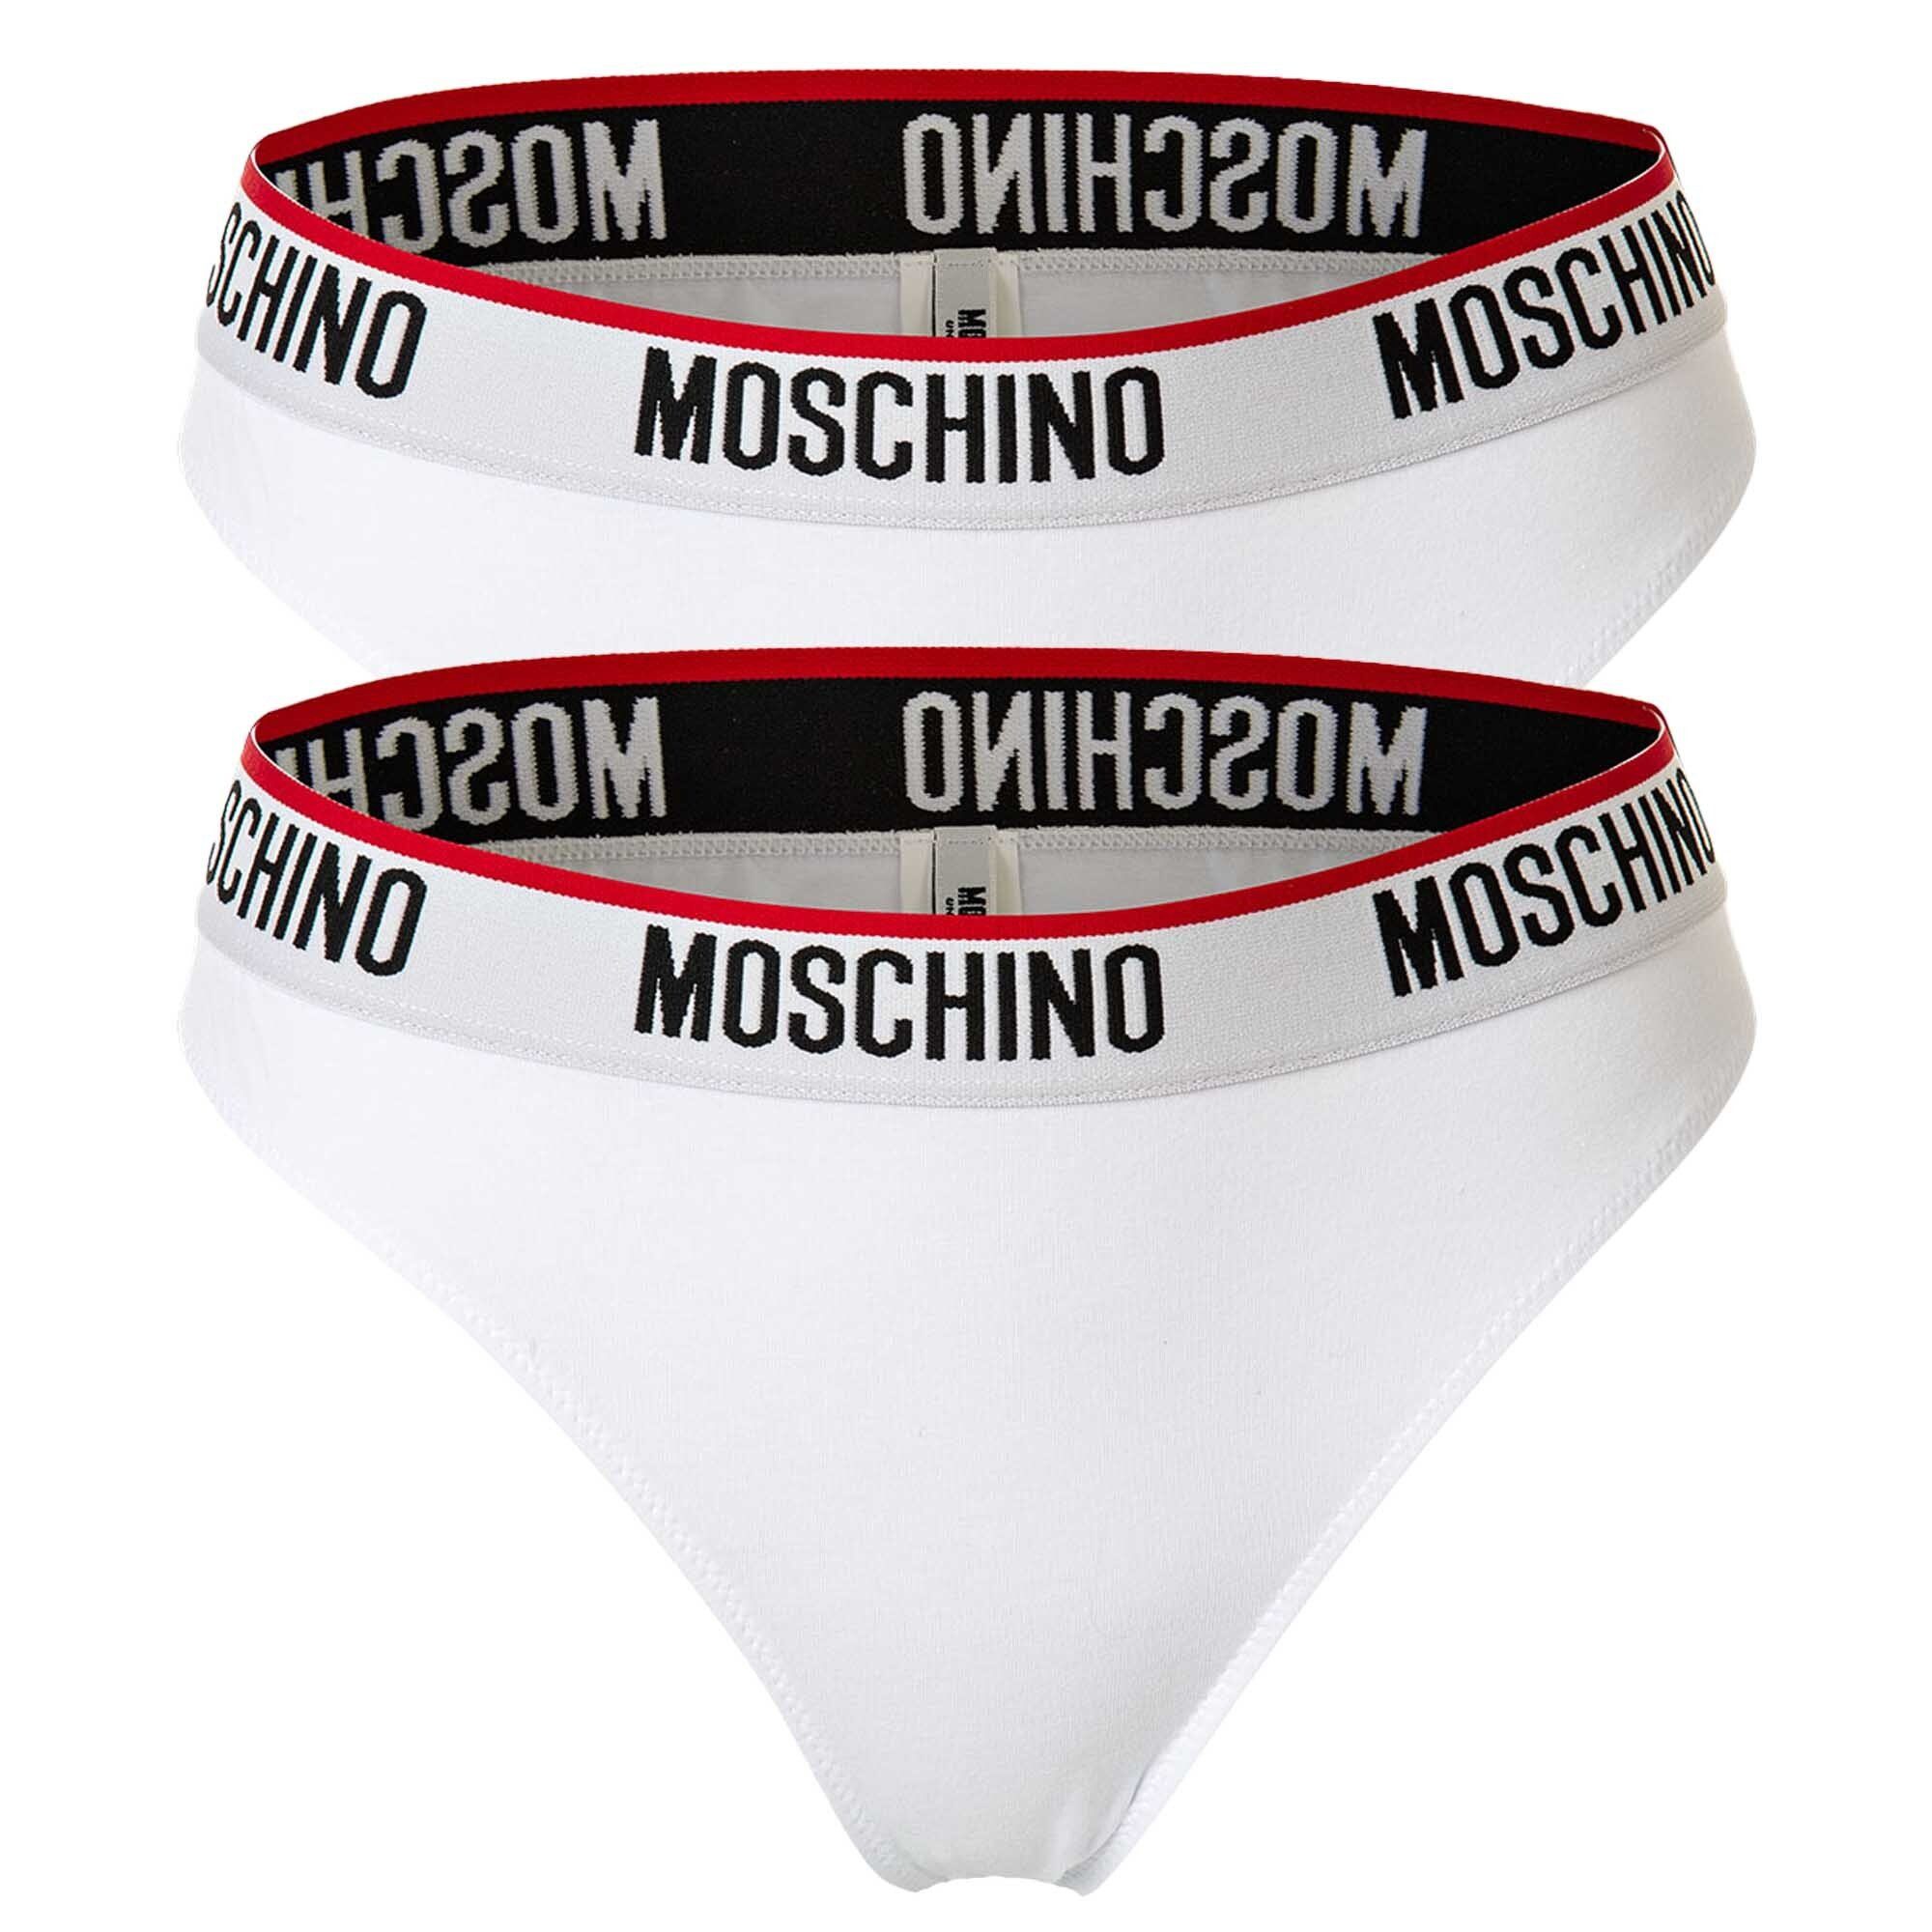 Moschino Slip Damen Slip 2er Pack - Unterhose, Baumwollmischung Weiß